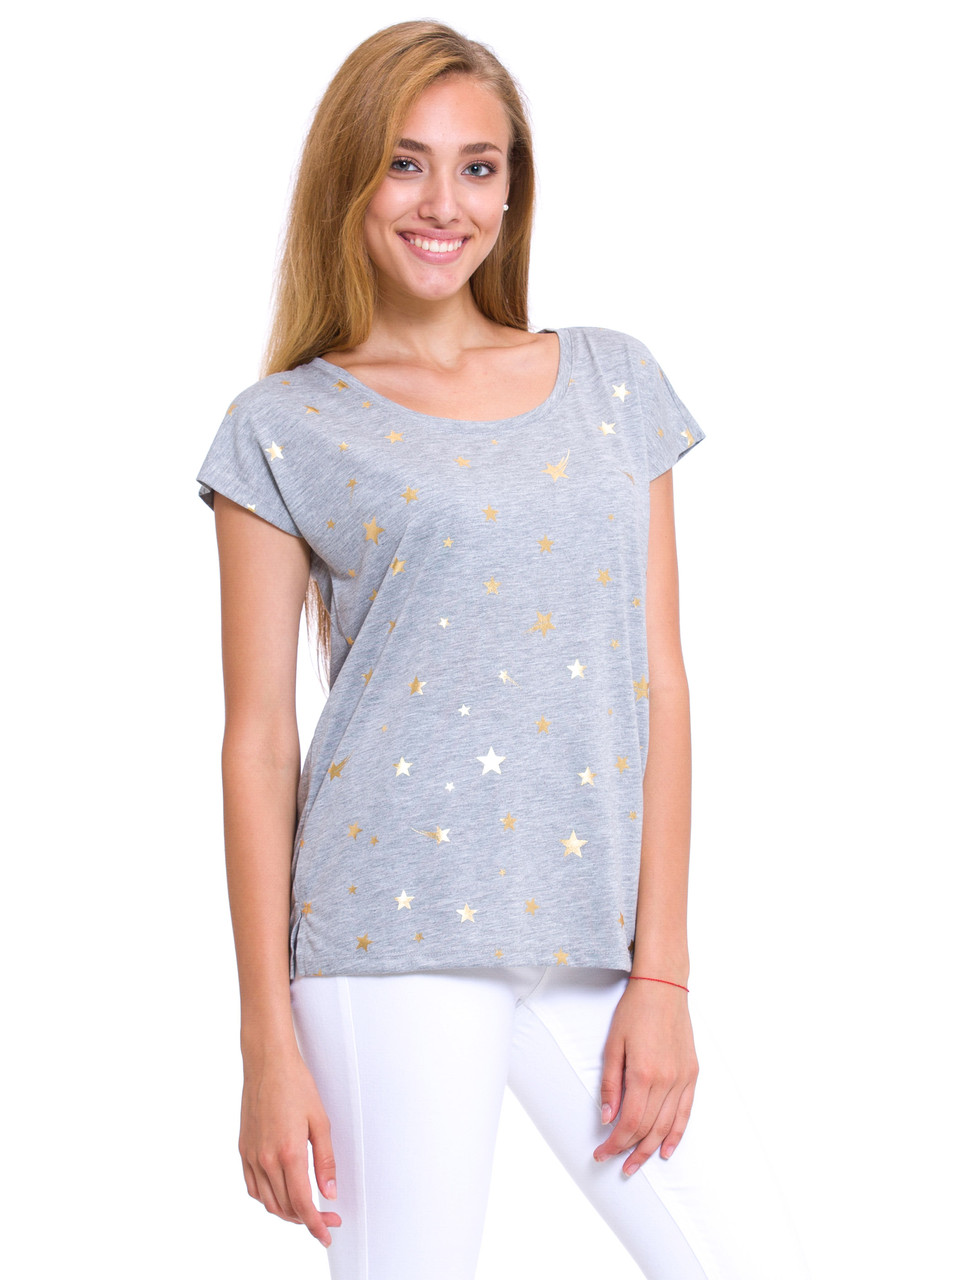 Сіра жіноча футболка Lc Waikiki / Лз Вайкікі з золотими зірочками